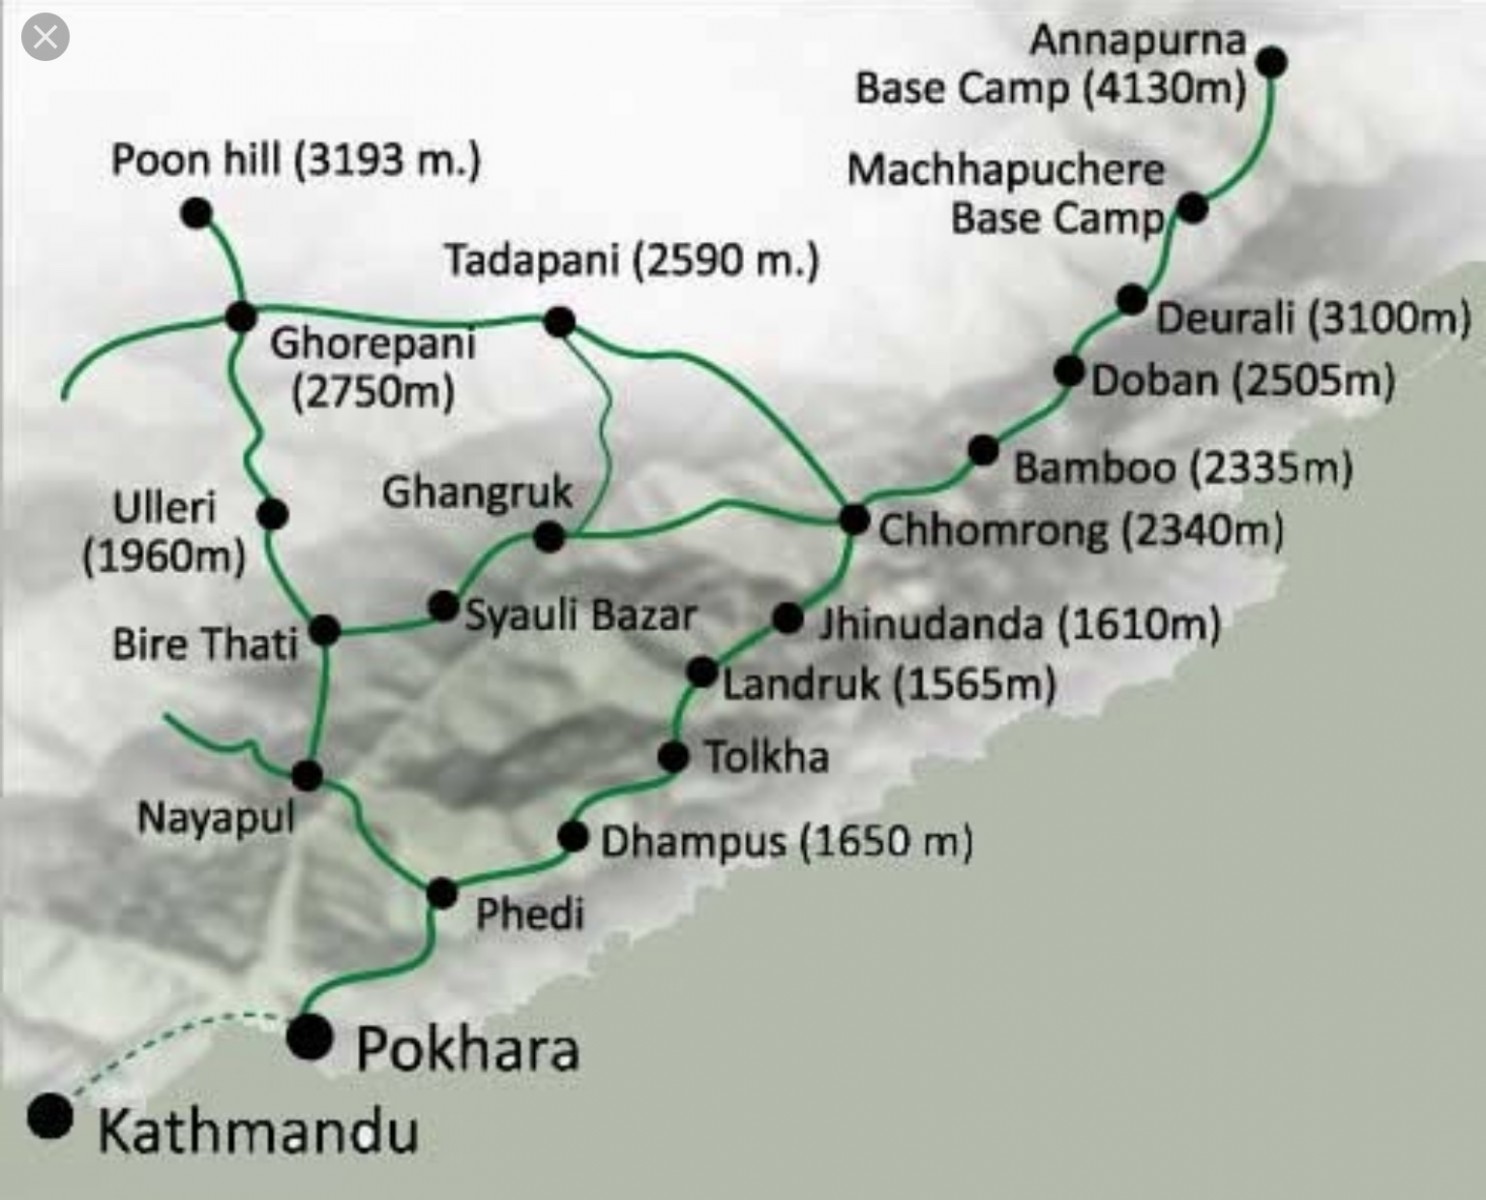 Annapurna Base Camp trek 7 days Map